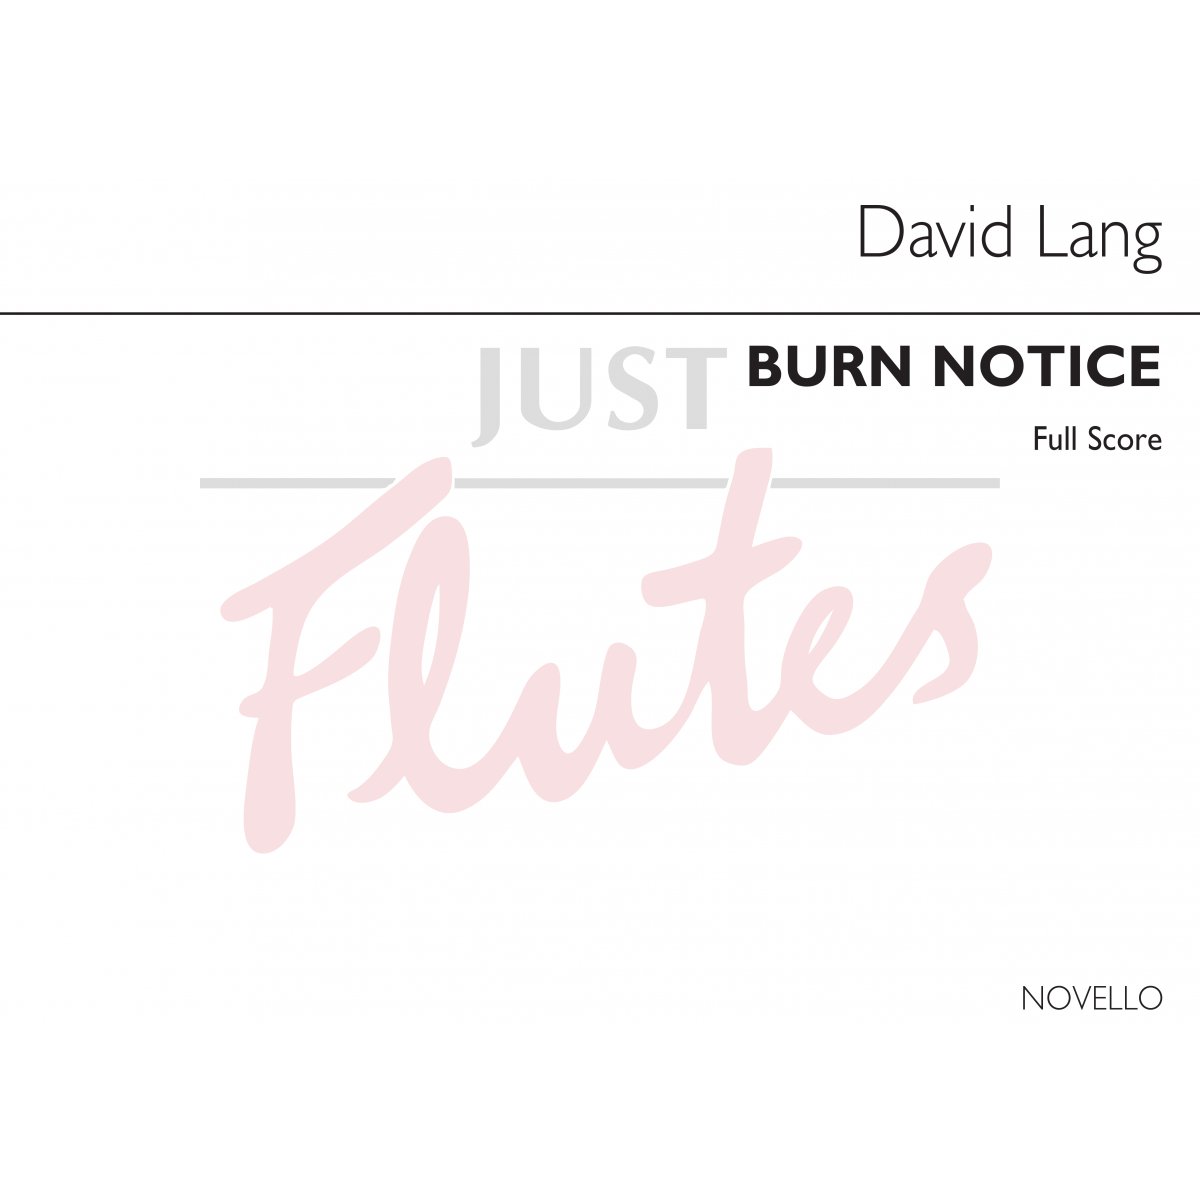 Burn Notice for Flute, Cello and Piano